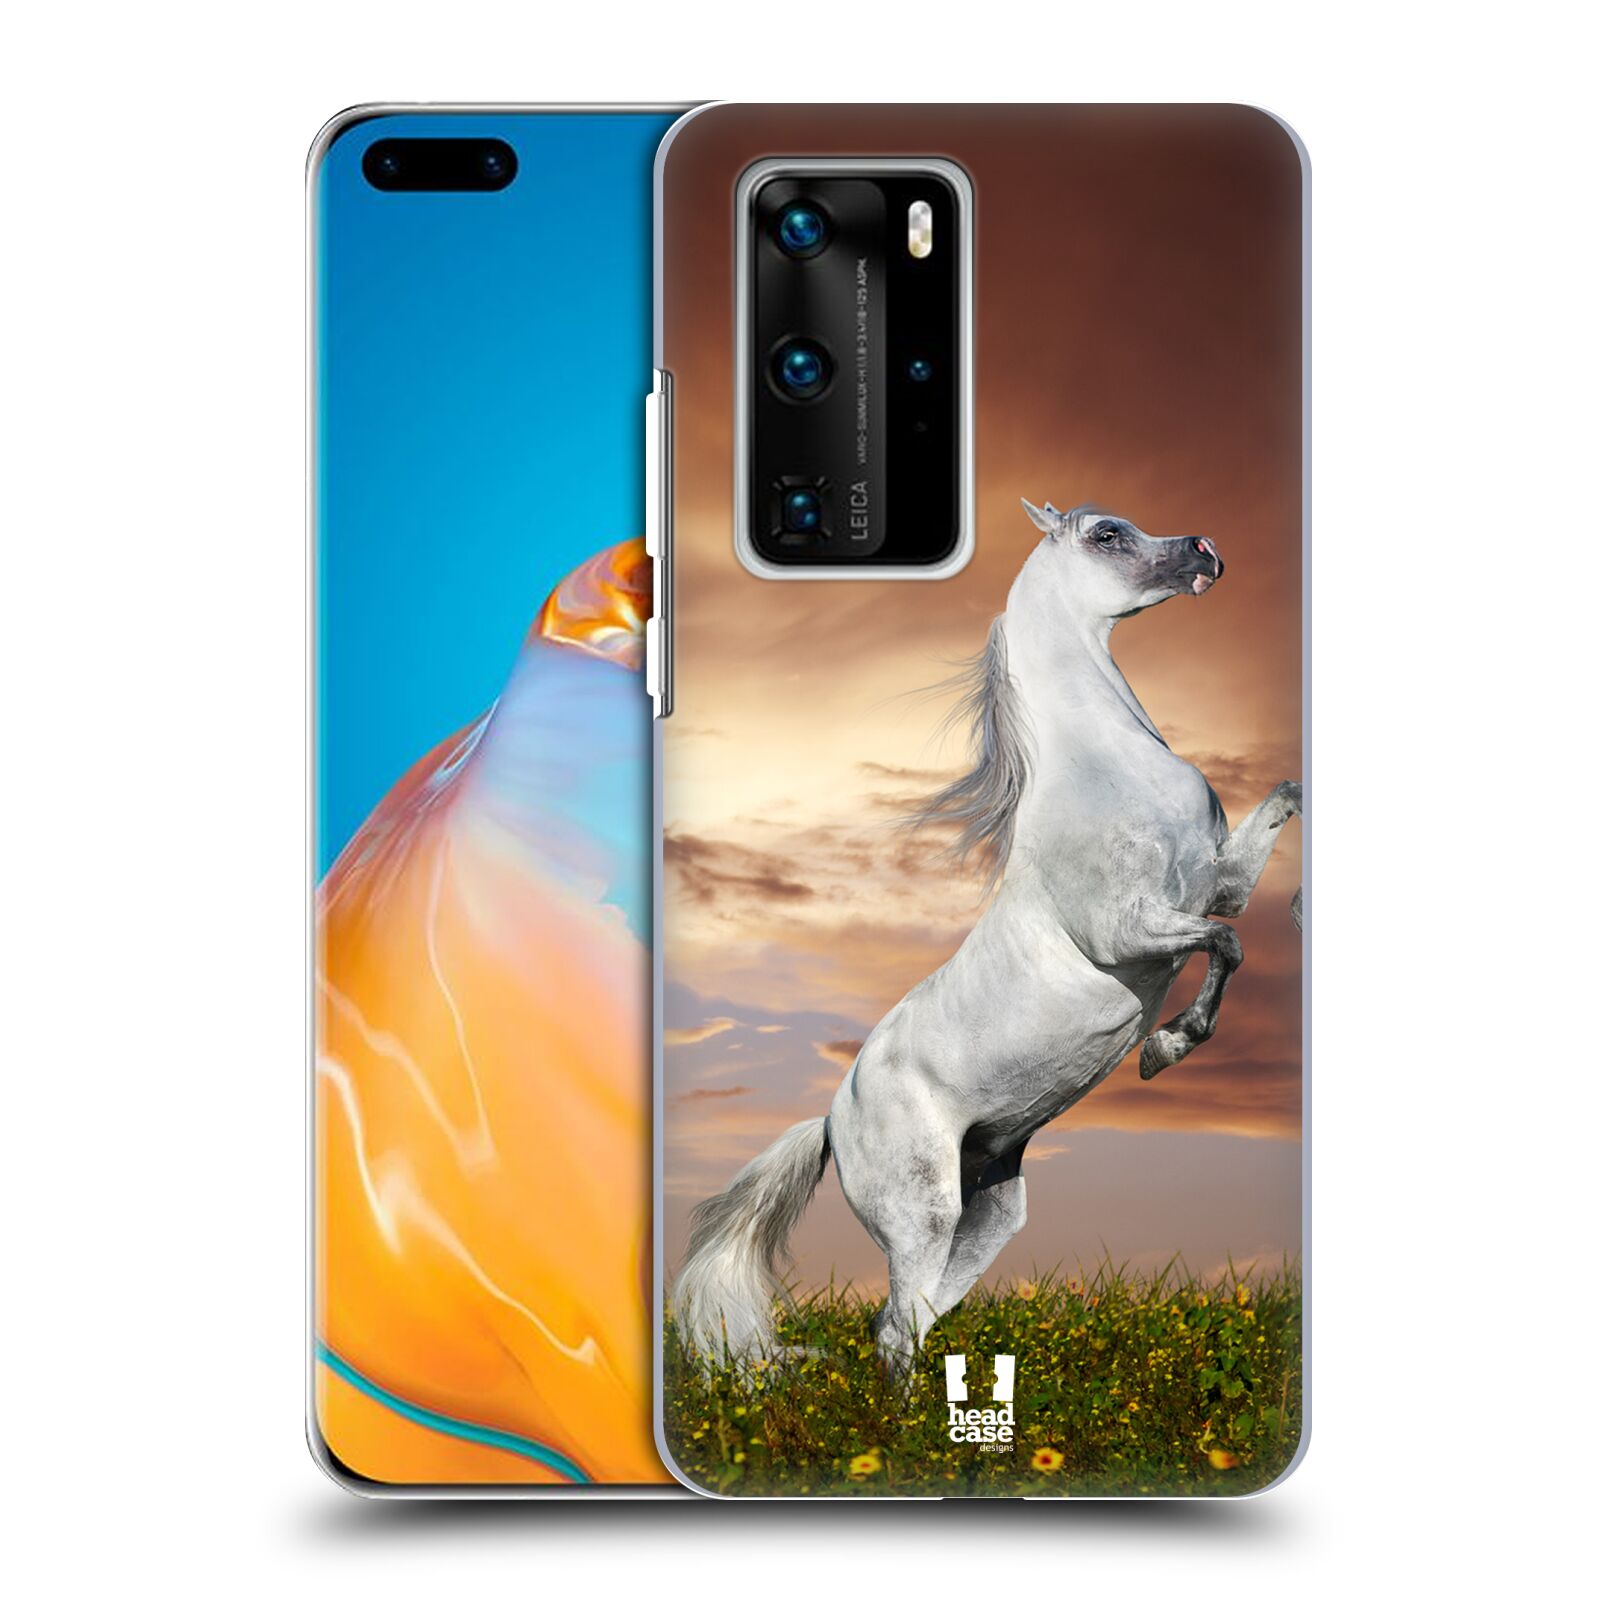 Zadní obal pro mobil Huawei P40 PRO / P40 PRO PLUS - HEAD CASE - Svět zvířat divoký kůň